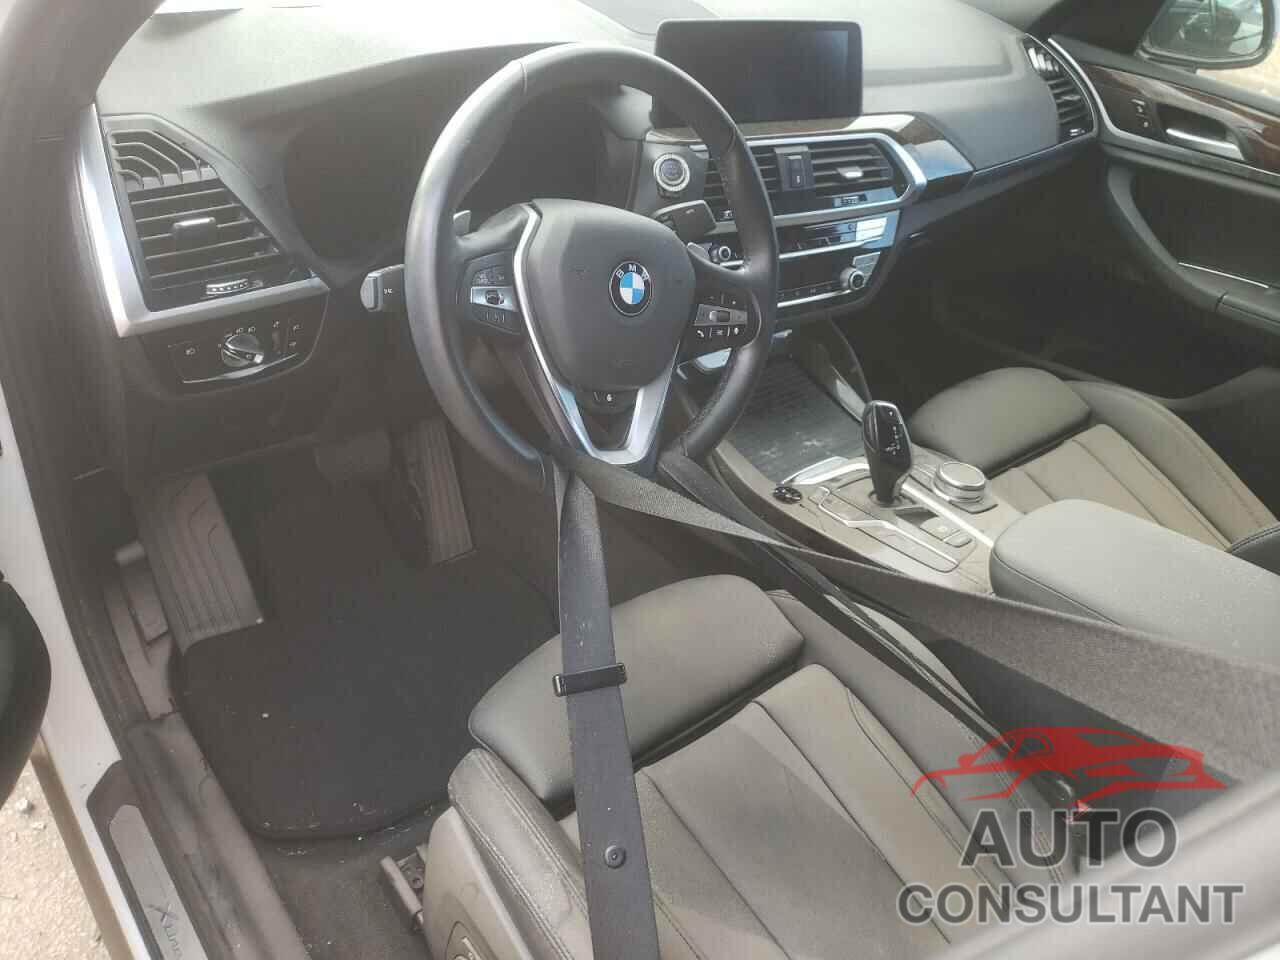 BMW X4 2021 - 5UX2V1C04M9G63120